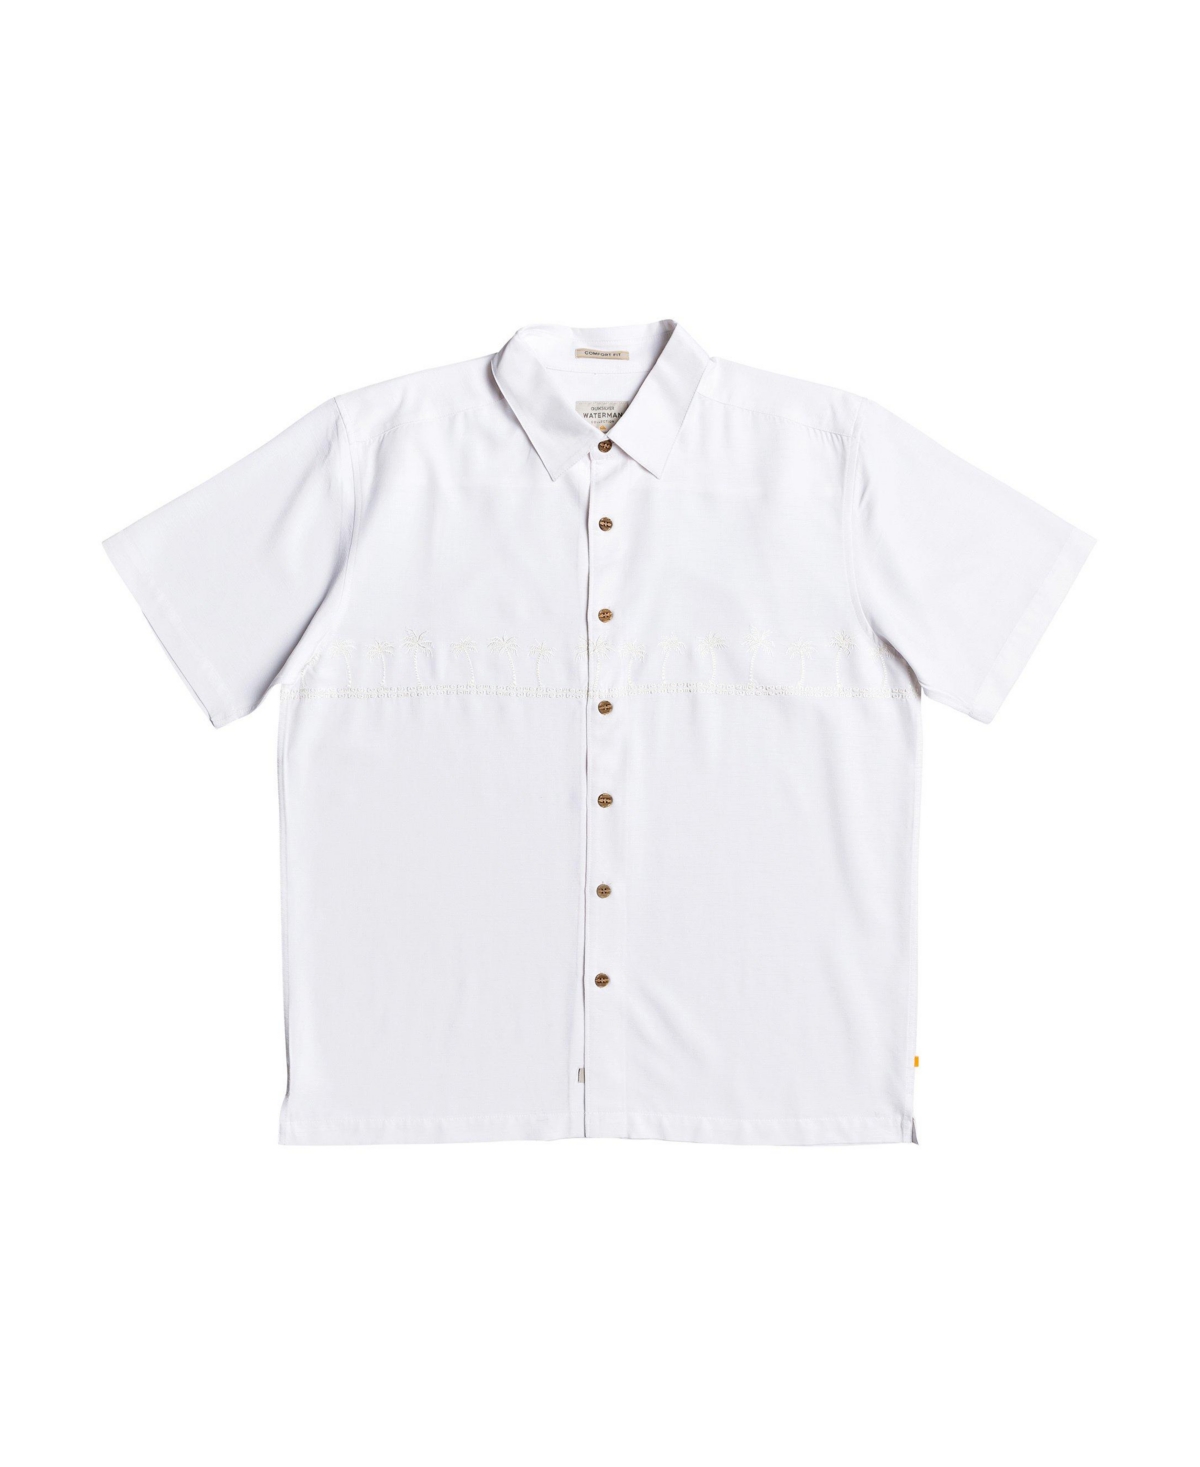 Men's Tahiti Palms Short Sleeve Shirt - White